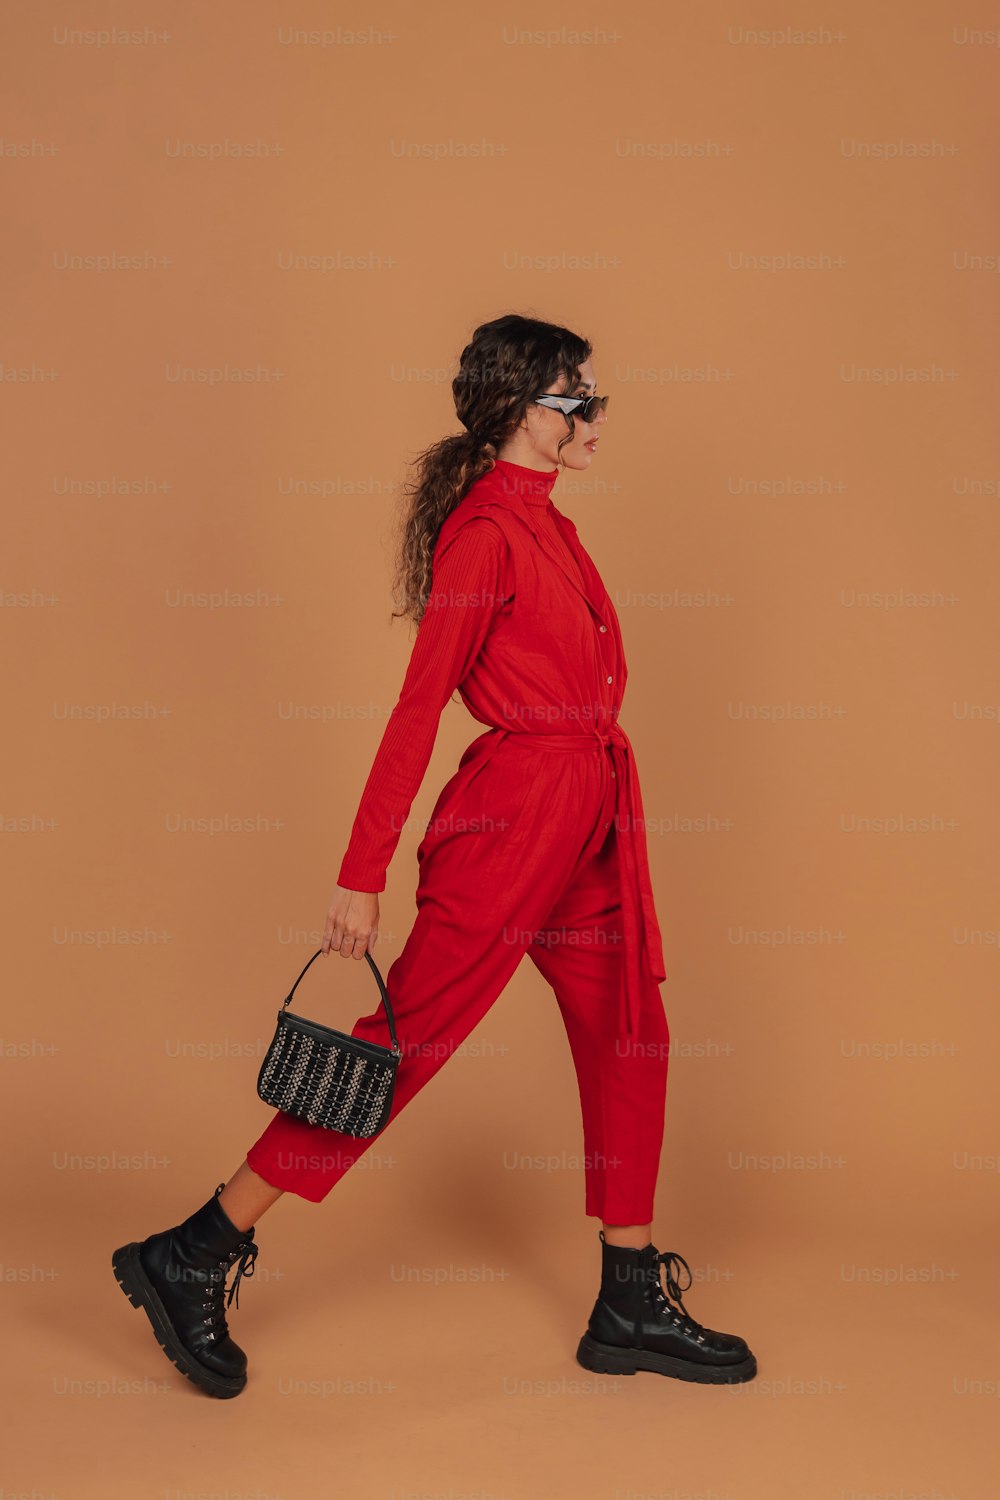 黒い財布を持つ赤いジャンプスーツを着た女性